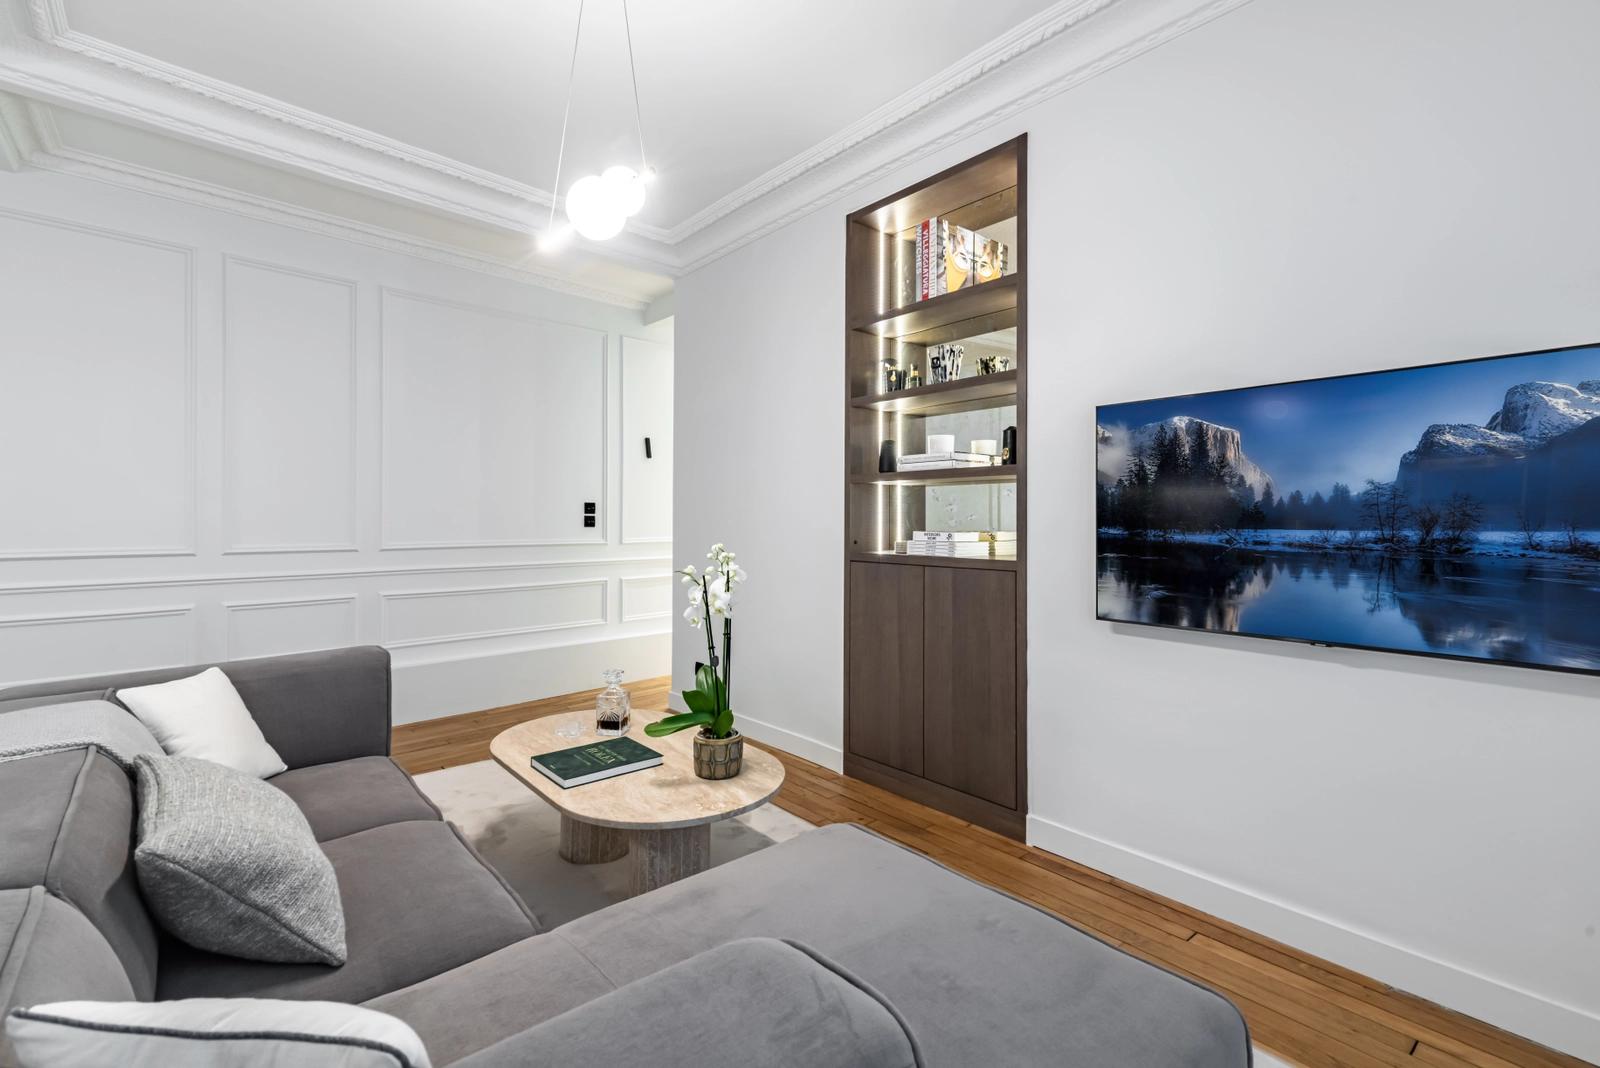 Salon dans Appartement refait par architecte - Trocadéro - 4